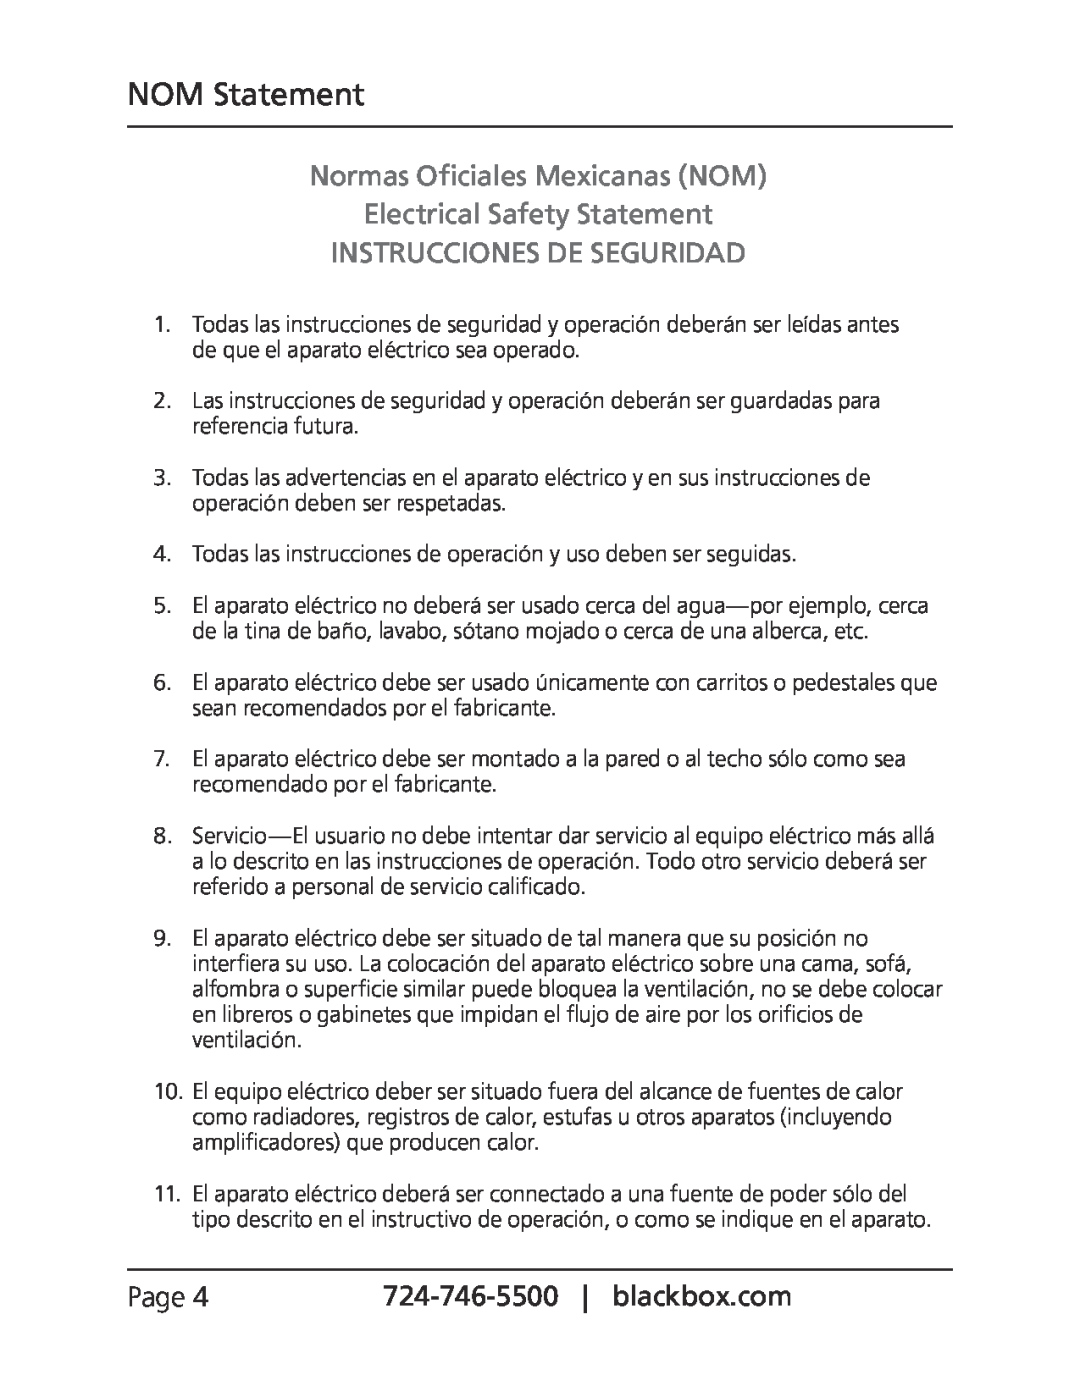 Black Box LGC202A NOM Statement, Normas Oficiales Mexicanas NOM Electrical Safety Statement, Instrucciones De Seguridad 